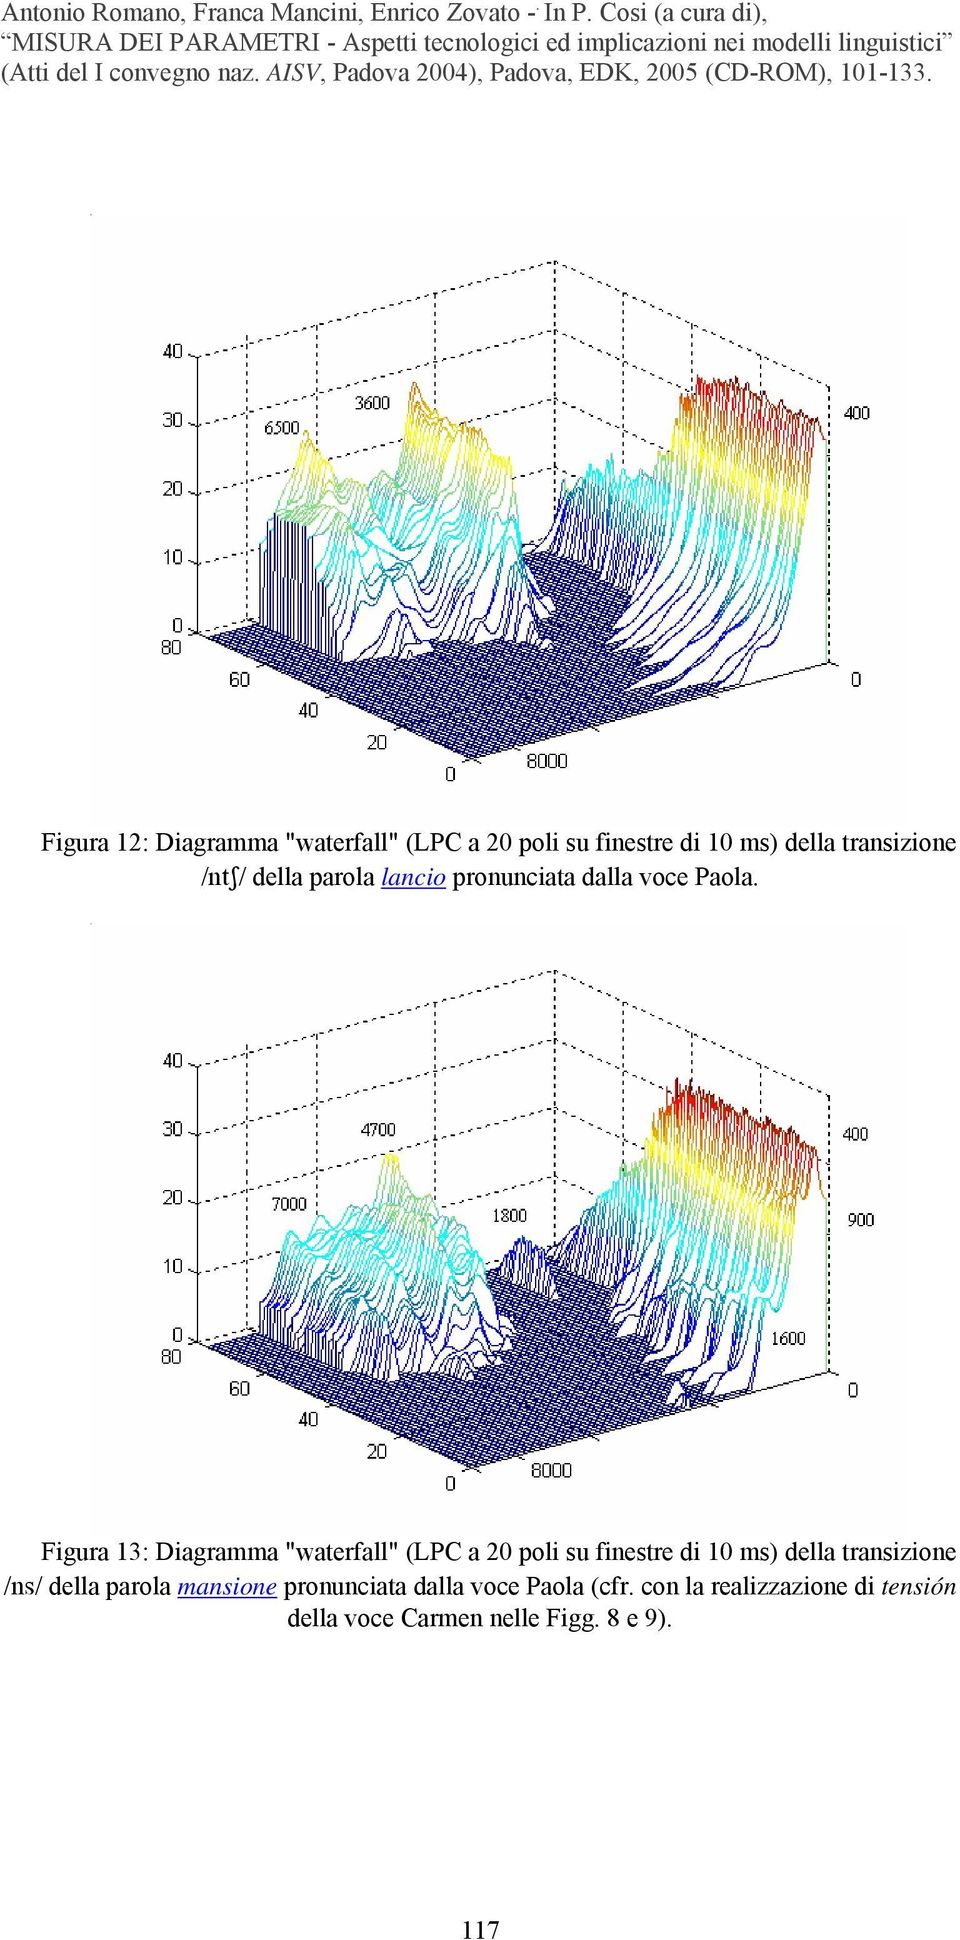 Figura 13: Diagramma "waterfall" (LPC a 20 poli su finestre di 10 ms) della transizione